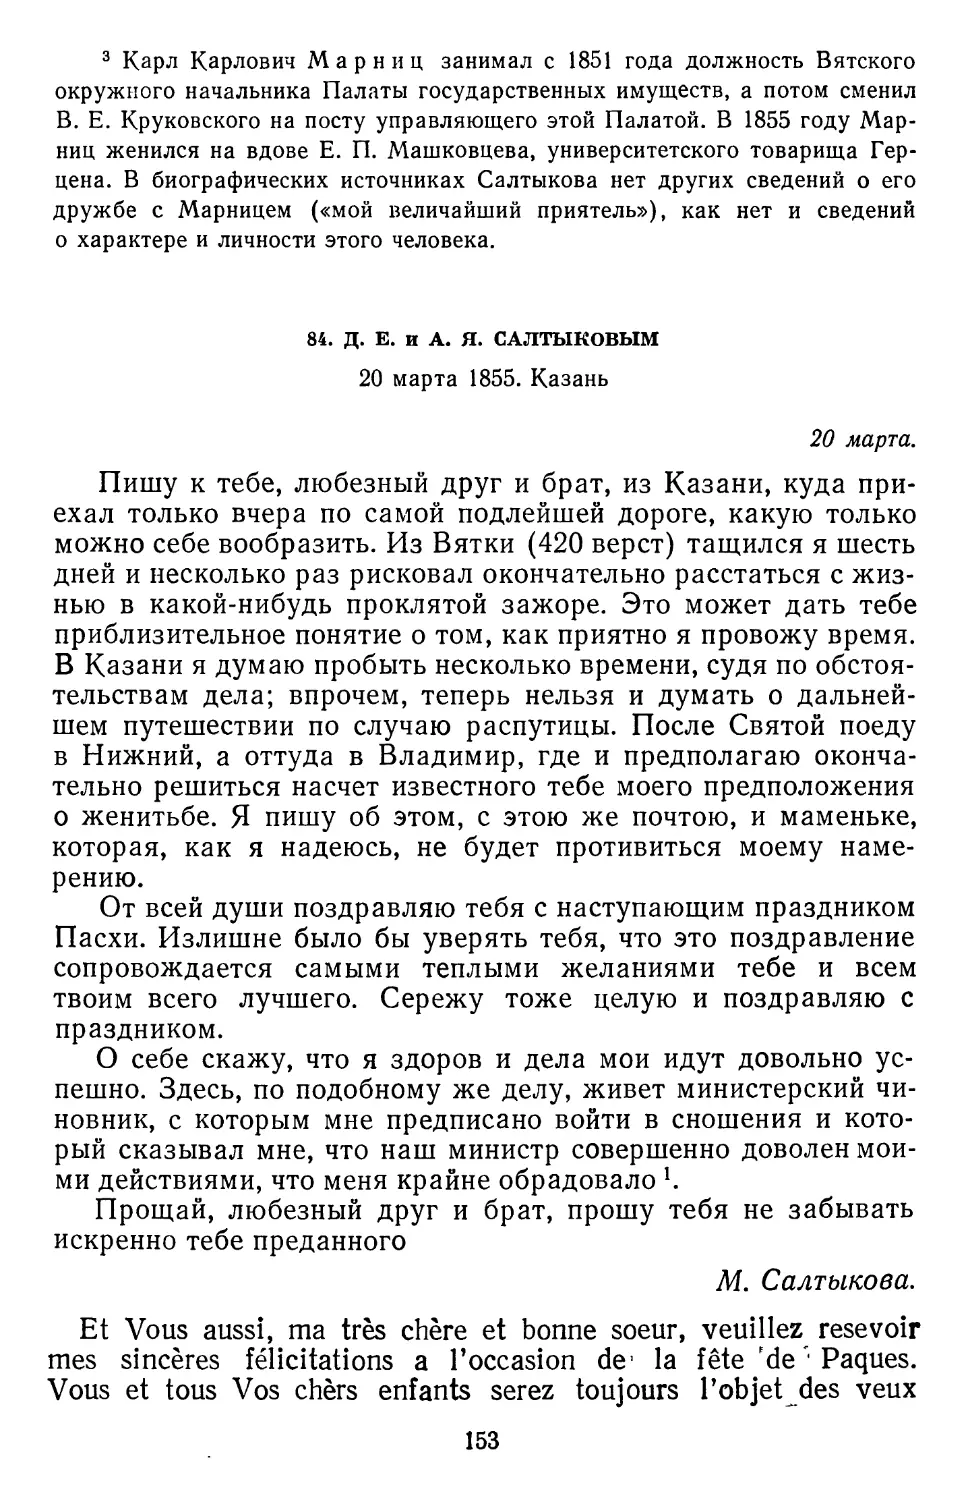 84.Д. Е. и А. Я. Салтыковым. 20 марта 1855. Казань